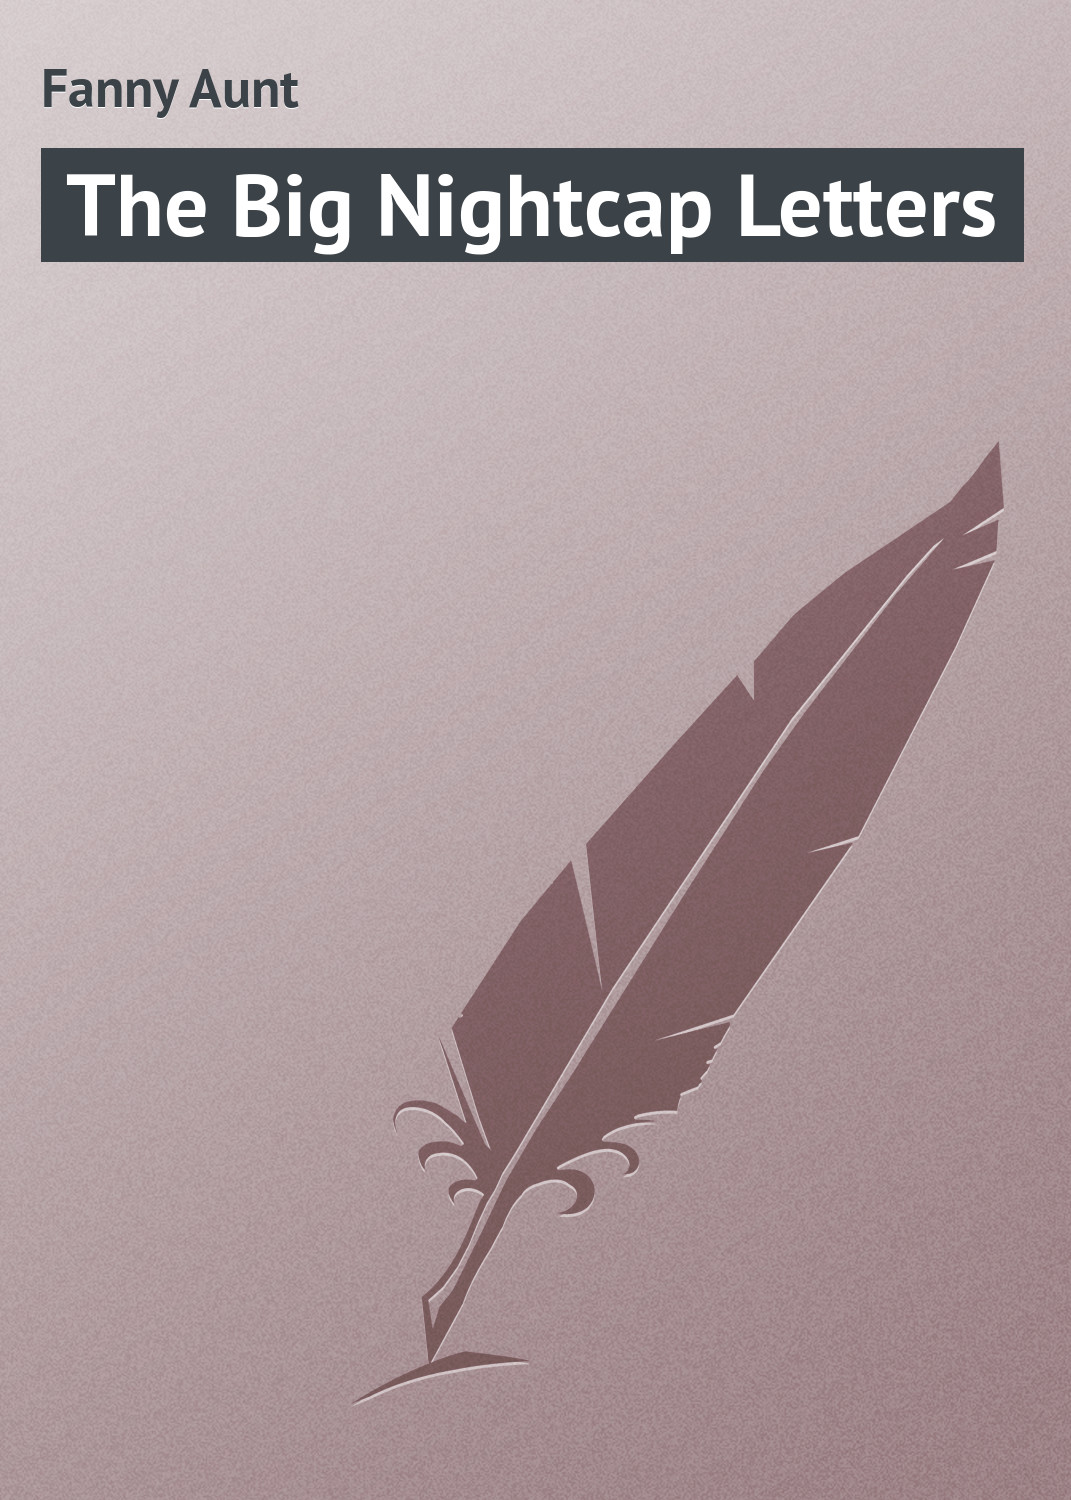 Книга The Big Nightcap Letters из серии , созданная Aunt Fanny, может относится к жанру Зарубежная классика, Зарубежные детские книги, Иностранные языки. Стоимость электронной книги The Big Nightcap Letters с идентификатором 23154211 составляет 5.99 руб.